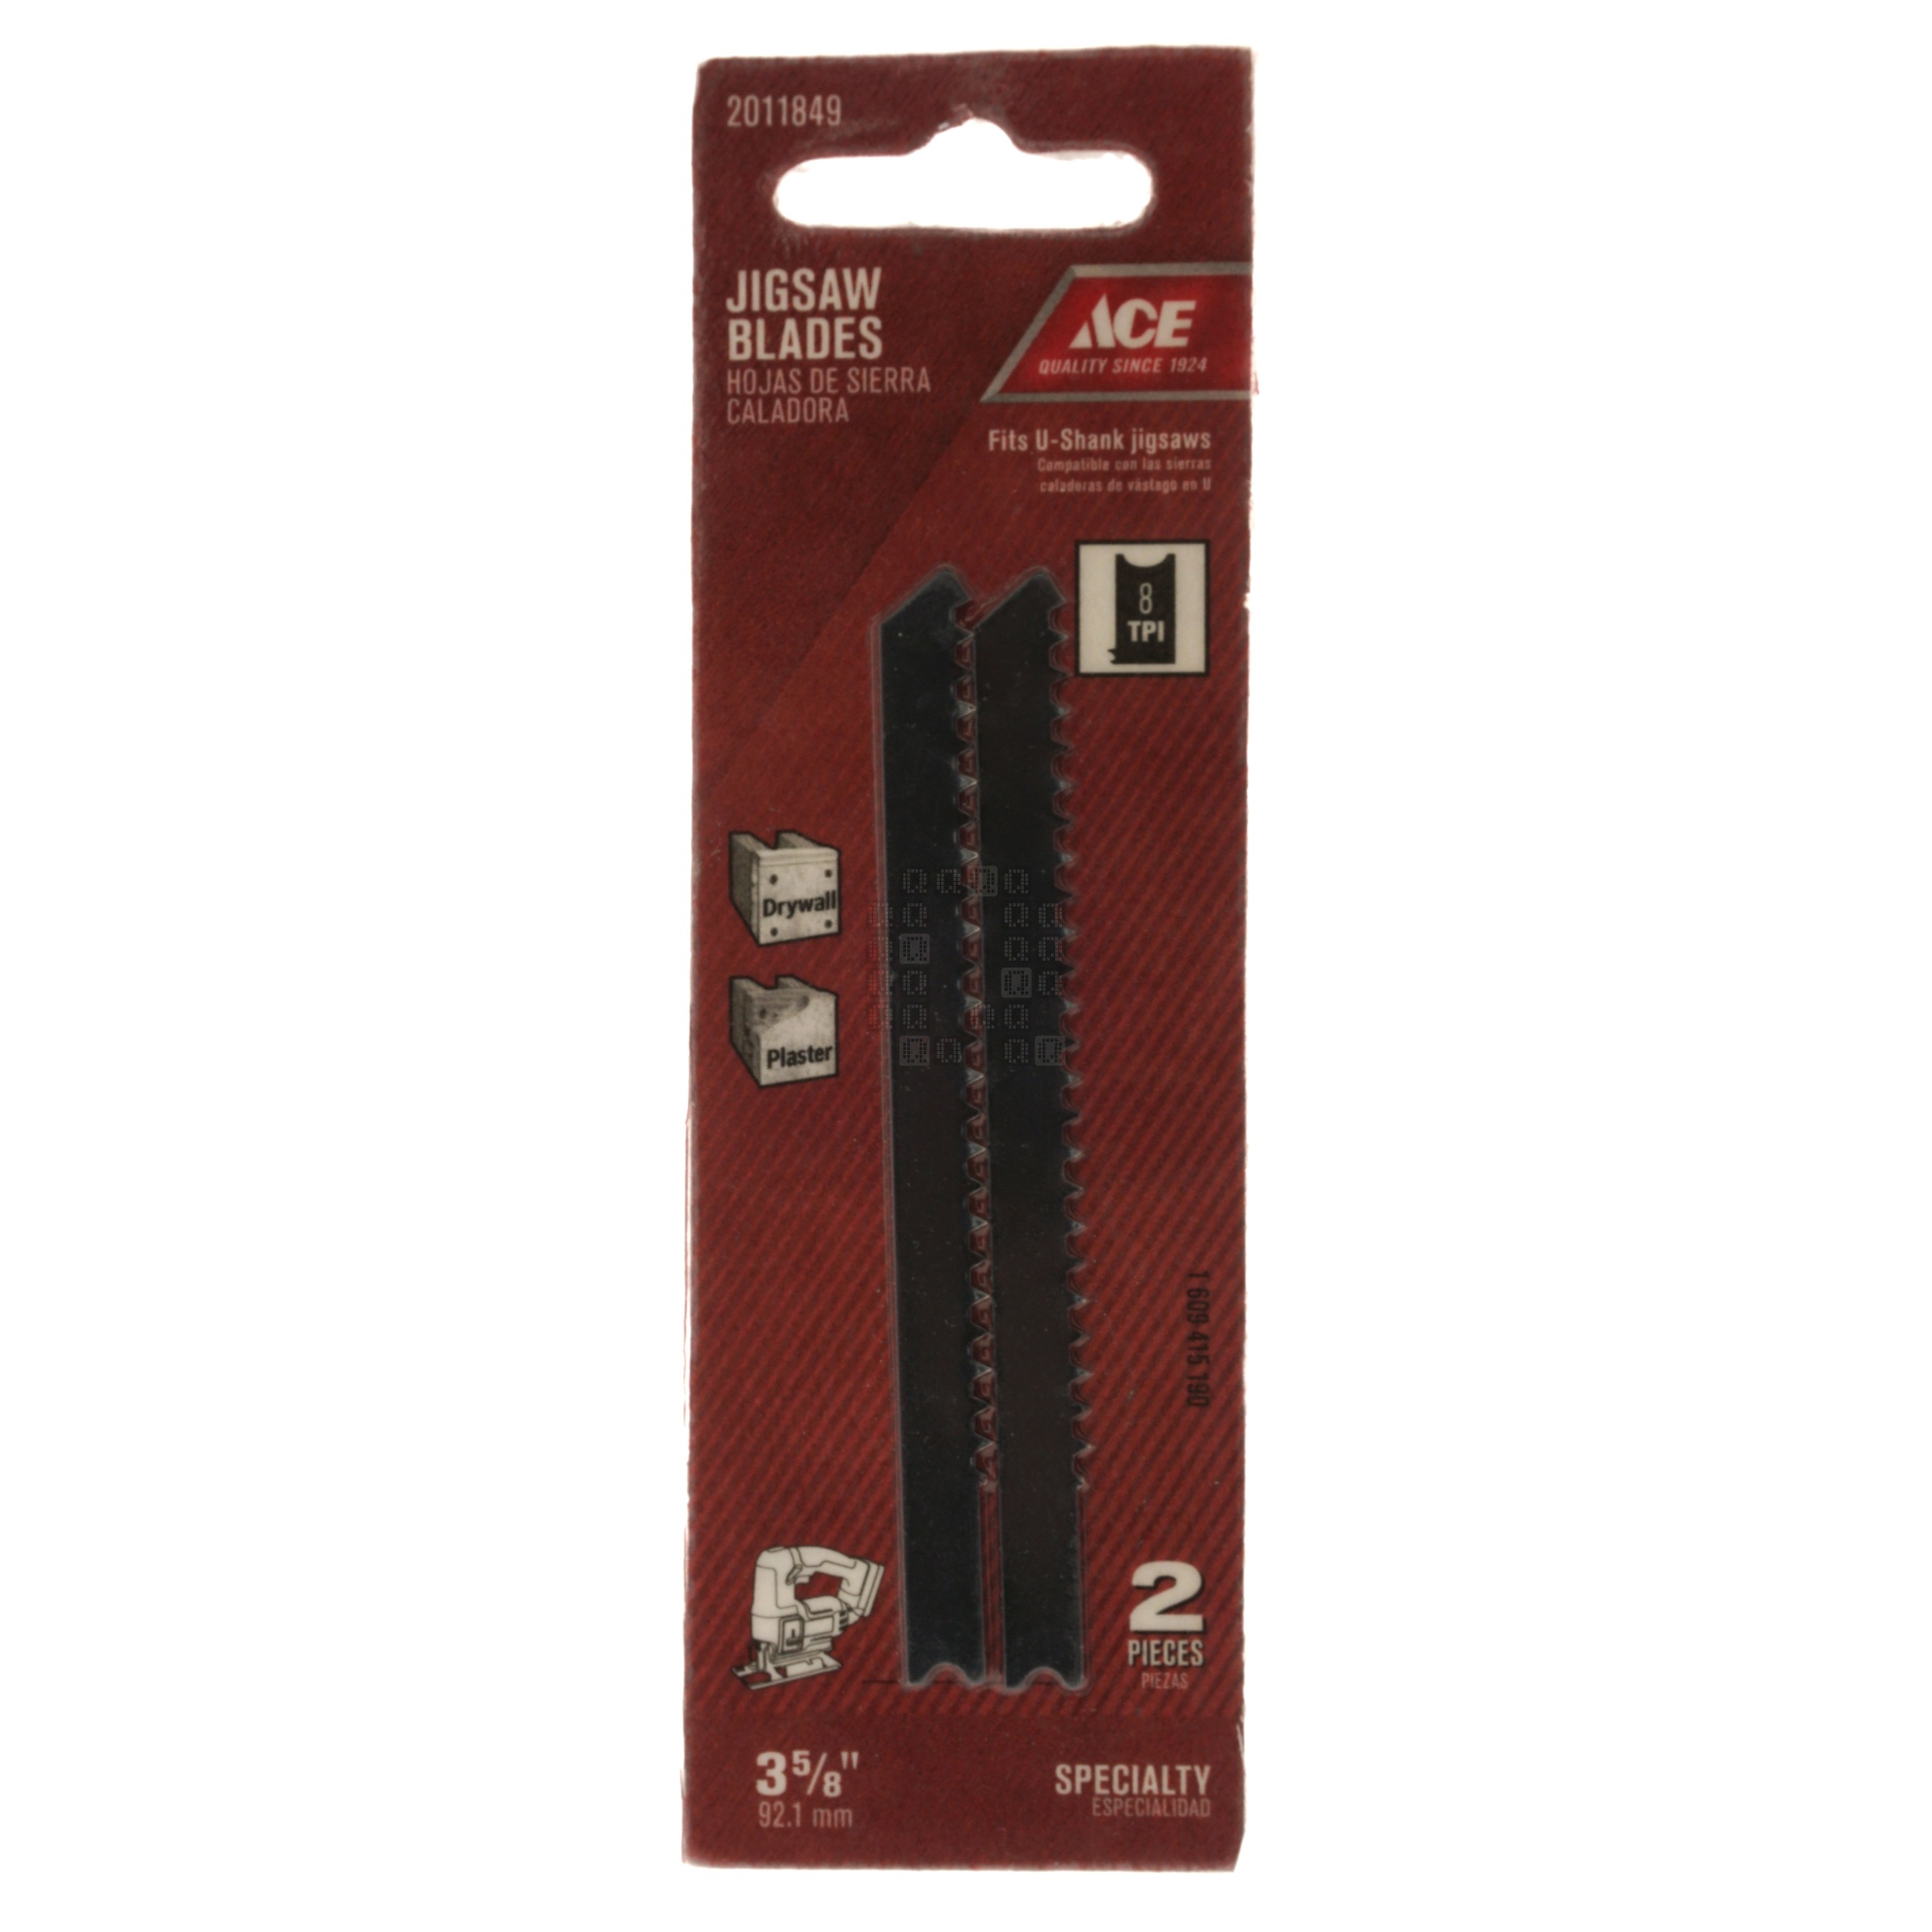 ACE Hardware 2011849 U-Shank Carbon Steel Jigsaw Blades, 8TPI, 3-5/8" Length, 2-Pack